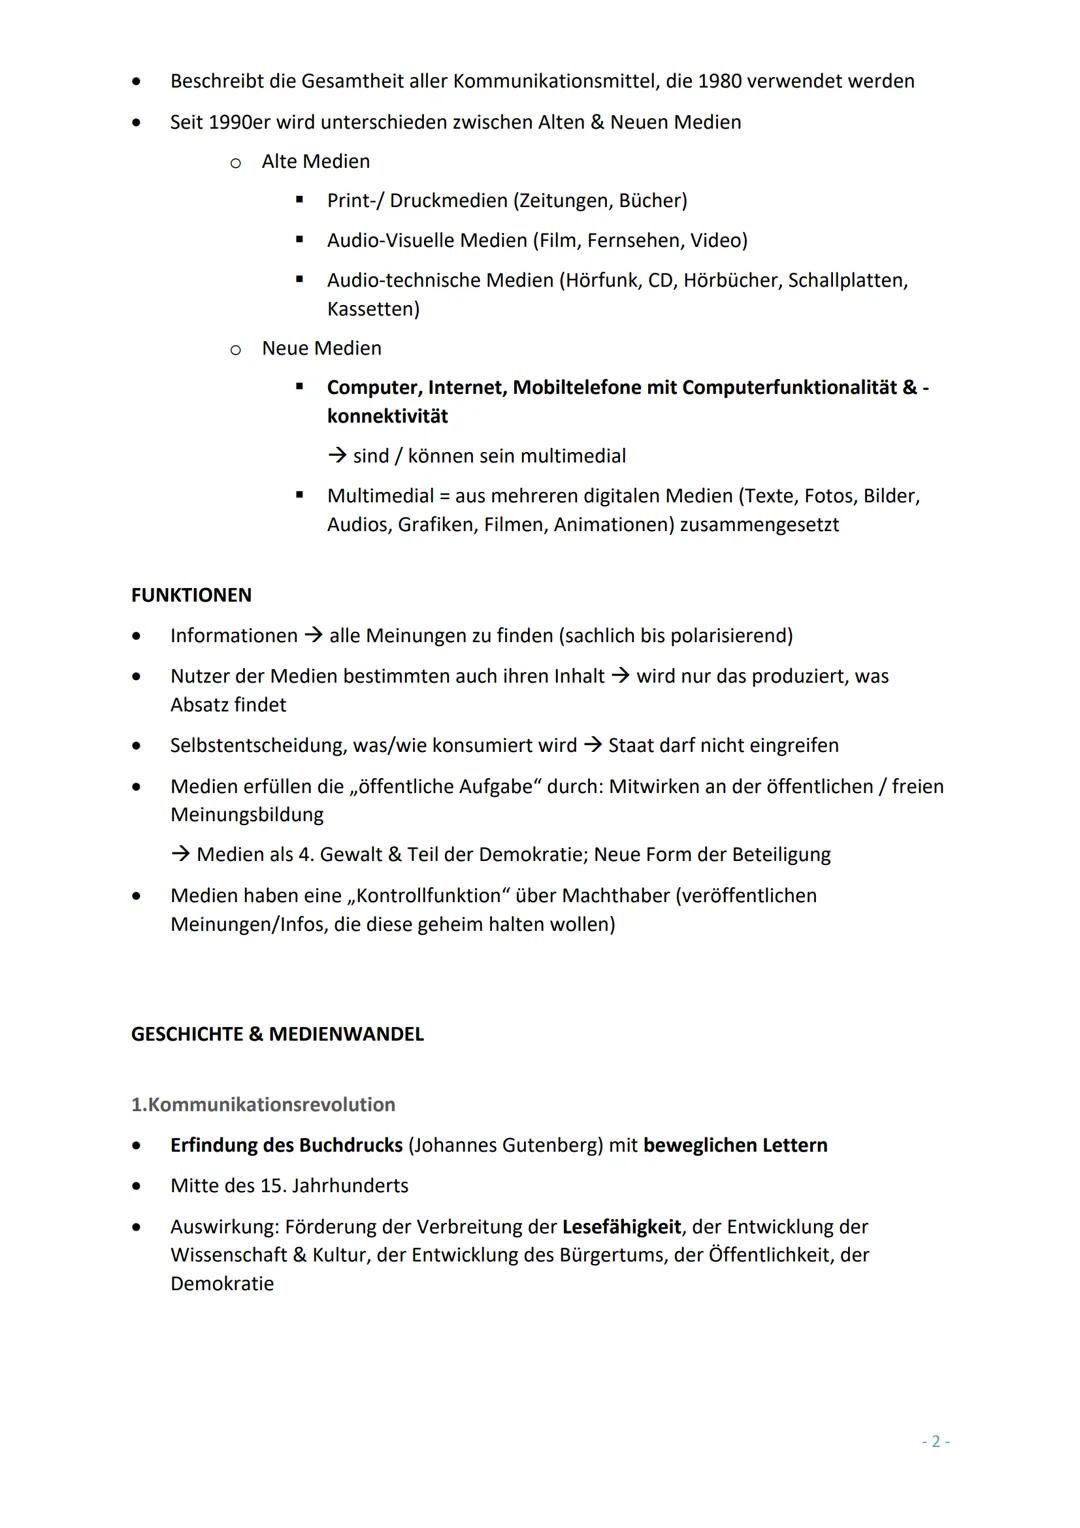 Abitur T4: Sprache, Medien, Lesen
MEDIEN.
DEFINITION..
FUNKTIONEN.
GESCHICHTE & MEDIENWANDEL
1. Kommunikationsrevolution.
2. Kommunikationsr